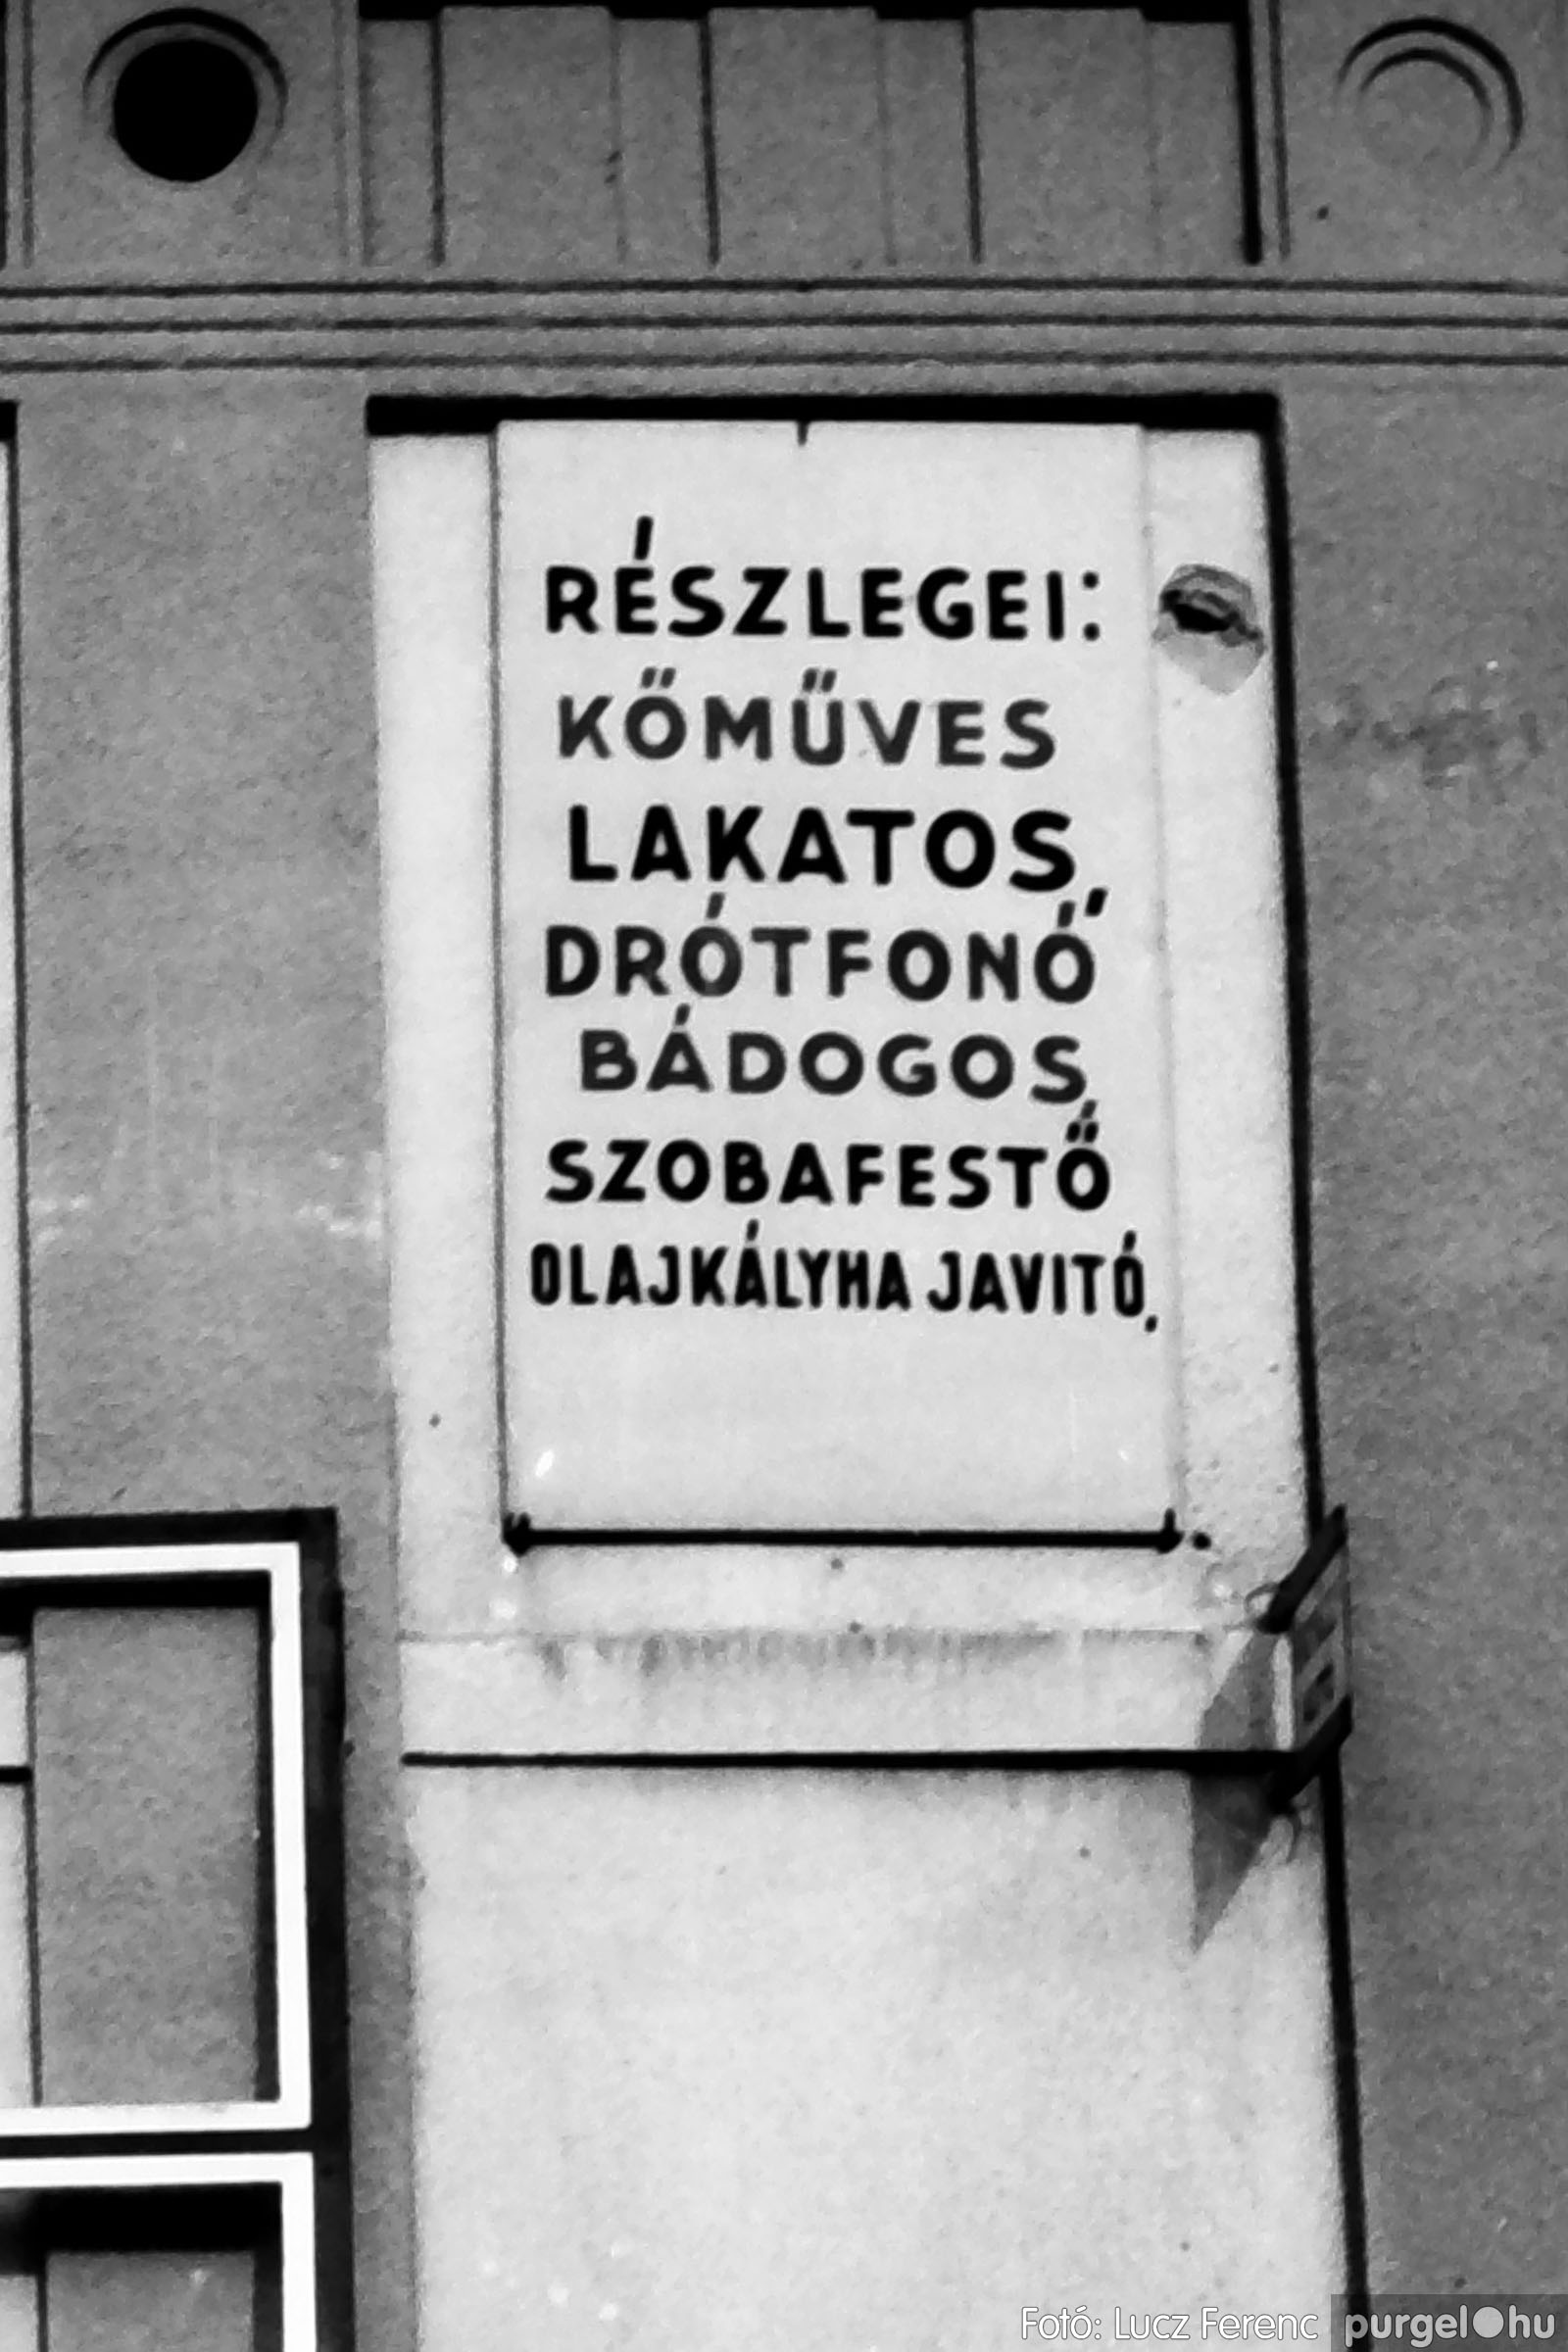 118. 1978. Élet a KTSZ-ben 001. - Fotó： Lucz Ferenc.jpg